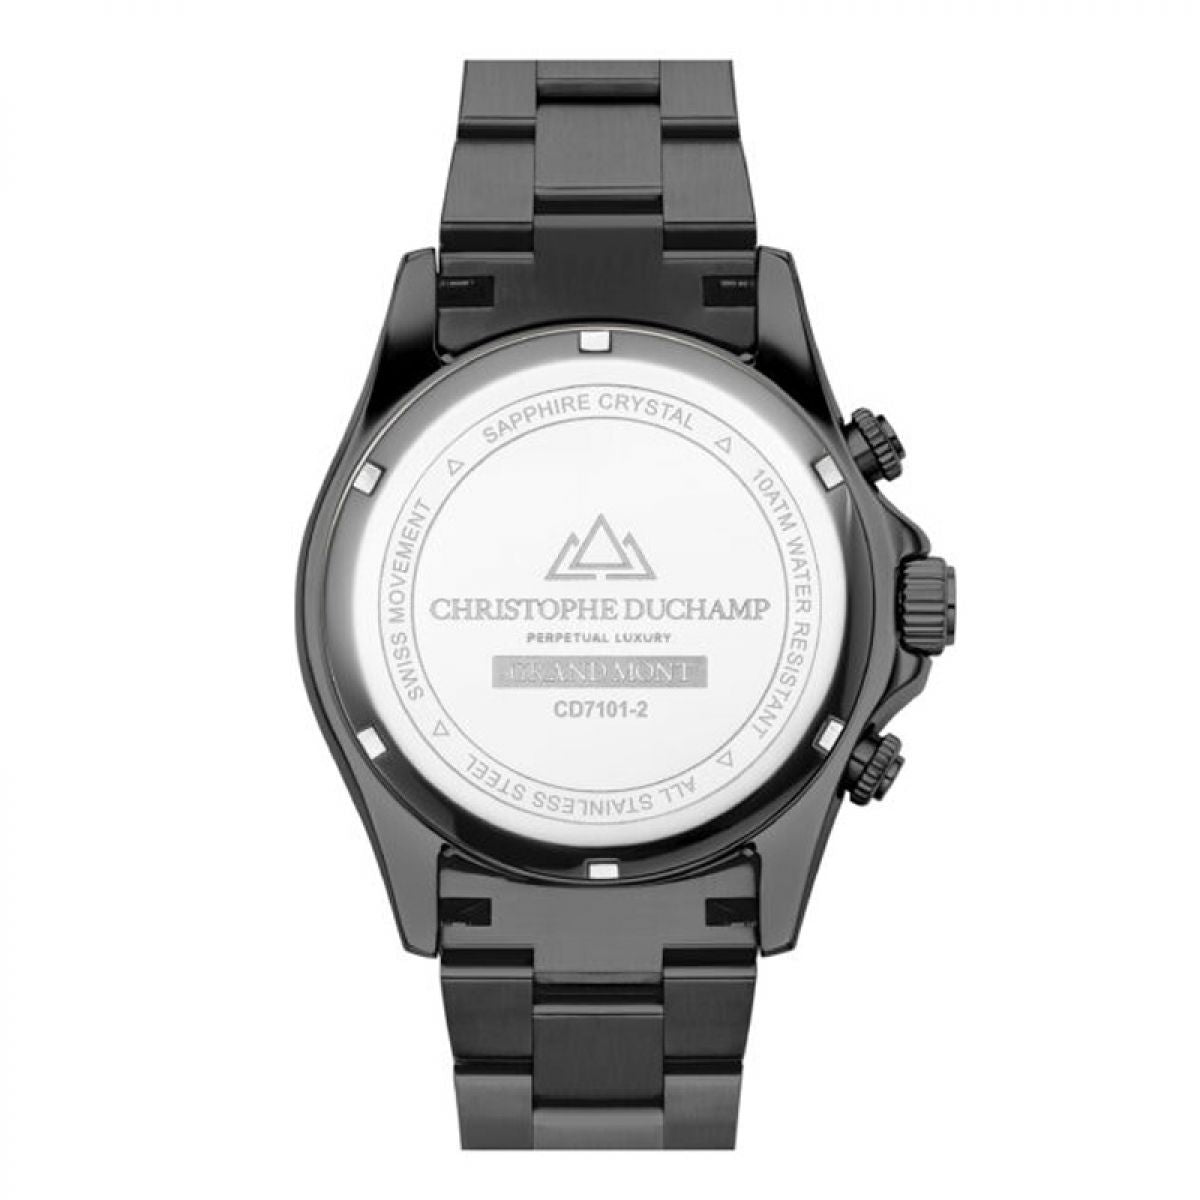 Christophe Duchamp Grand Mont CD7101-2 Heren Horloge 42mm 10 ATM